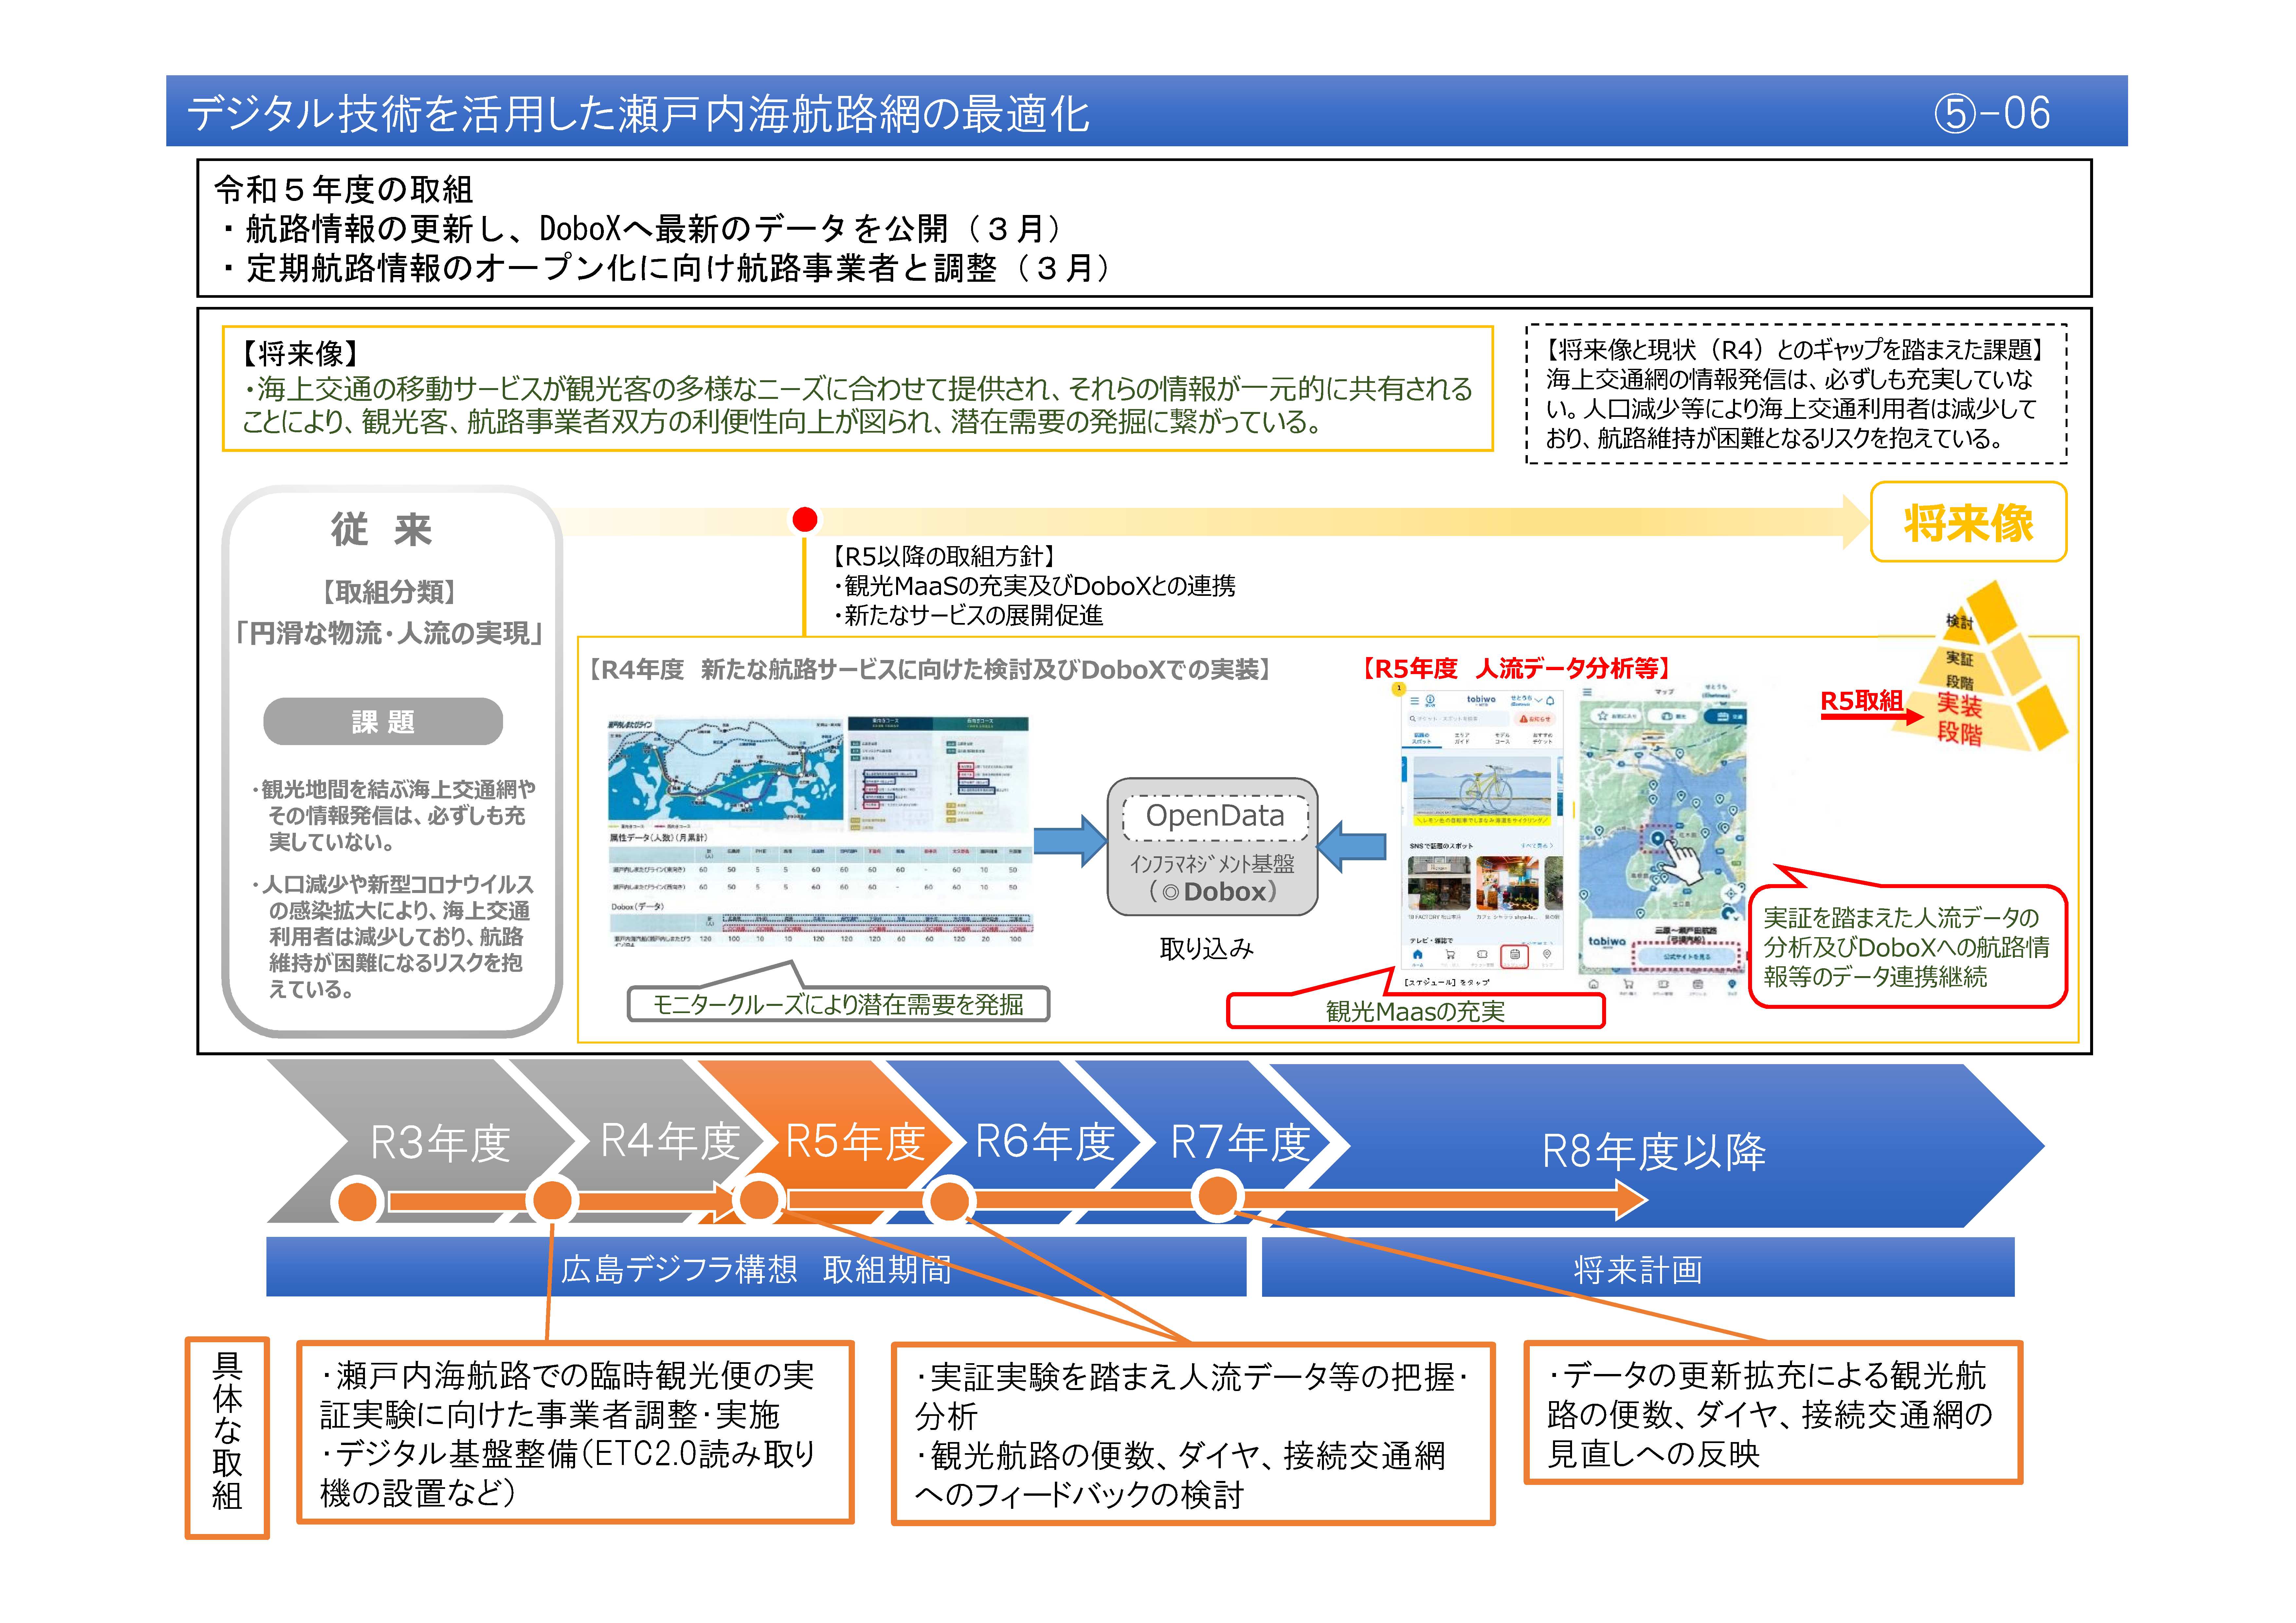 【(5)-6】デジタル技術を活用した瀬戸内海航路網の最適化